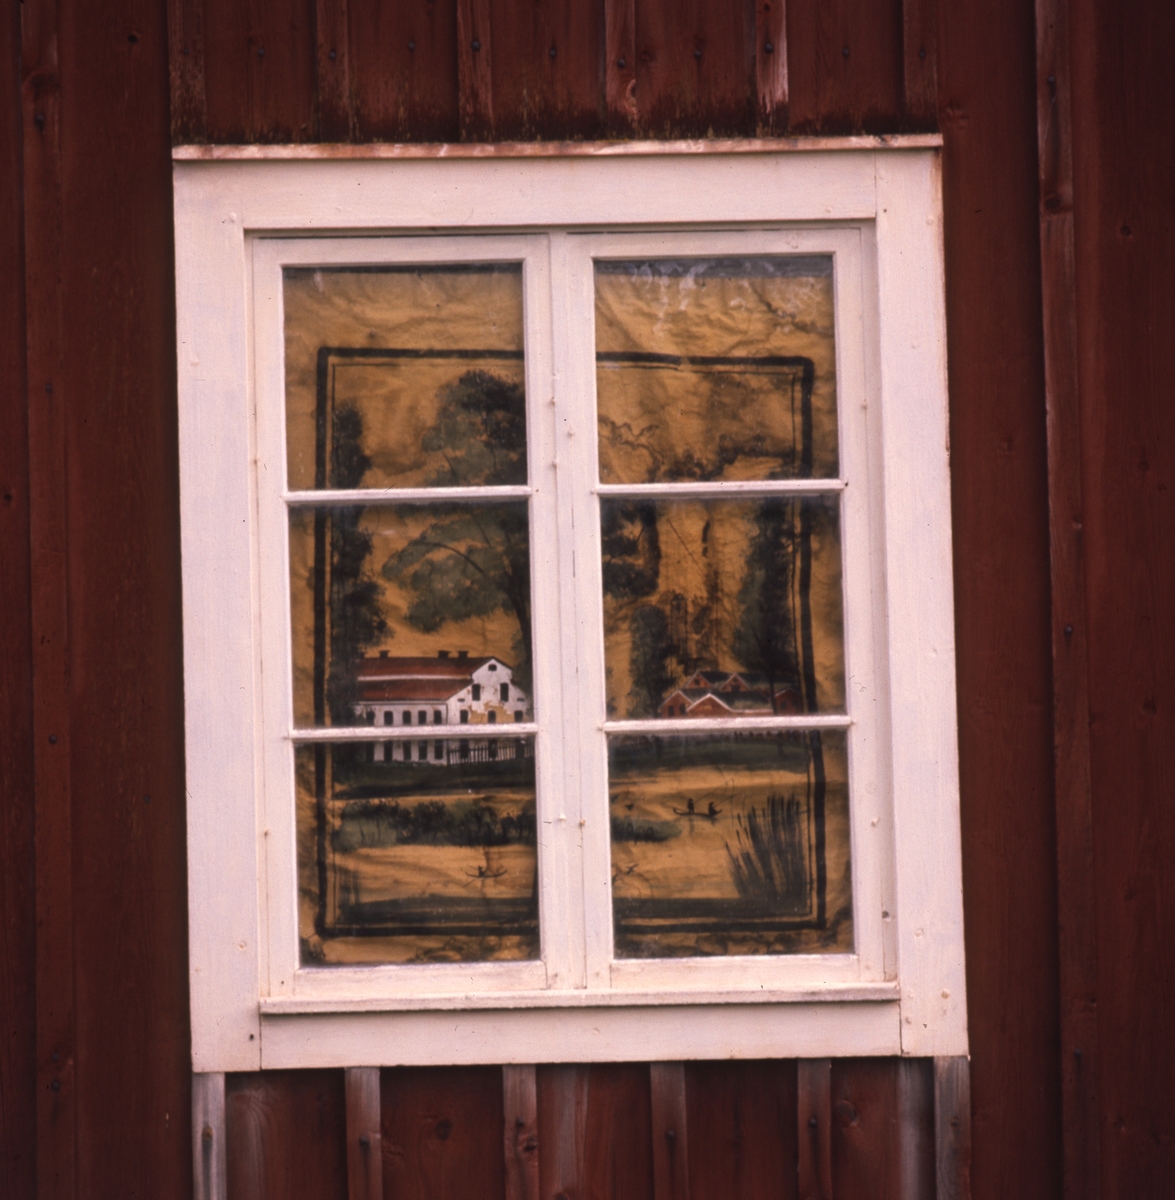 Exteriör med spröjsat fönster på röd trävägg. Innanför fönstret ser man en rullgardin med mönster föreställande ett landskap med byggnader.